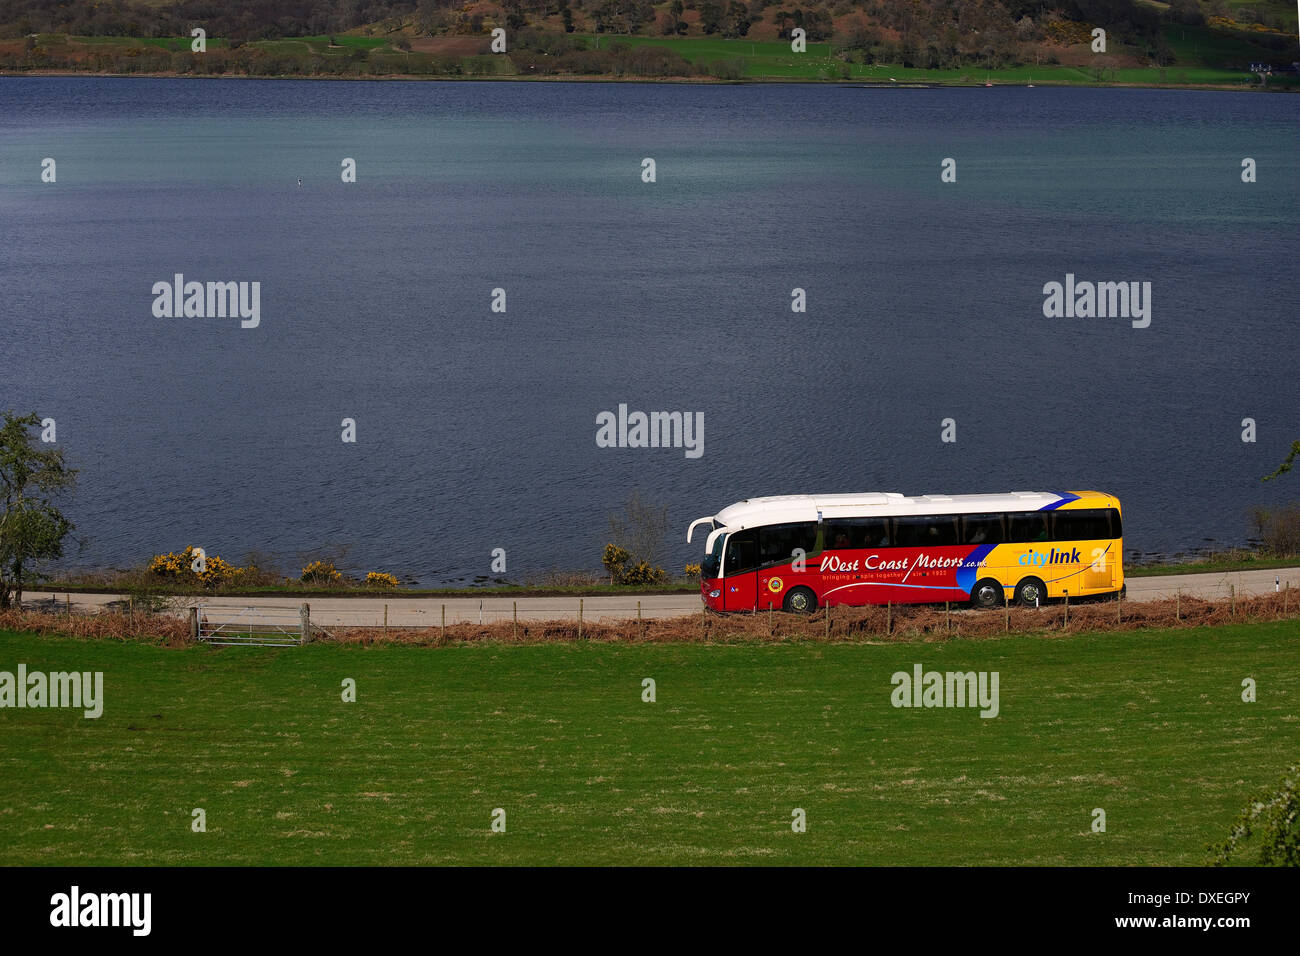 Costa oeste Motores/ Citylink entrenador, Loch Etive, Argyll Foto de stock